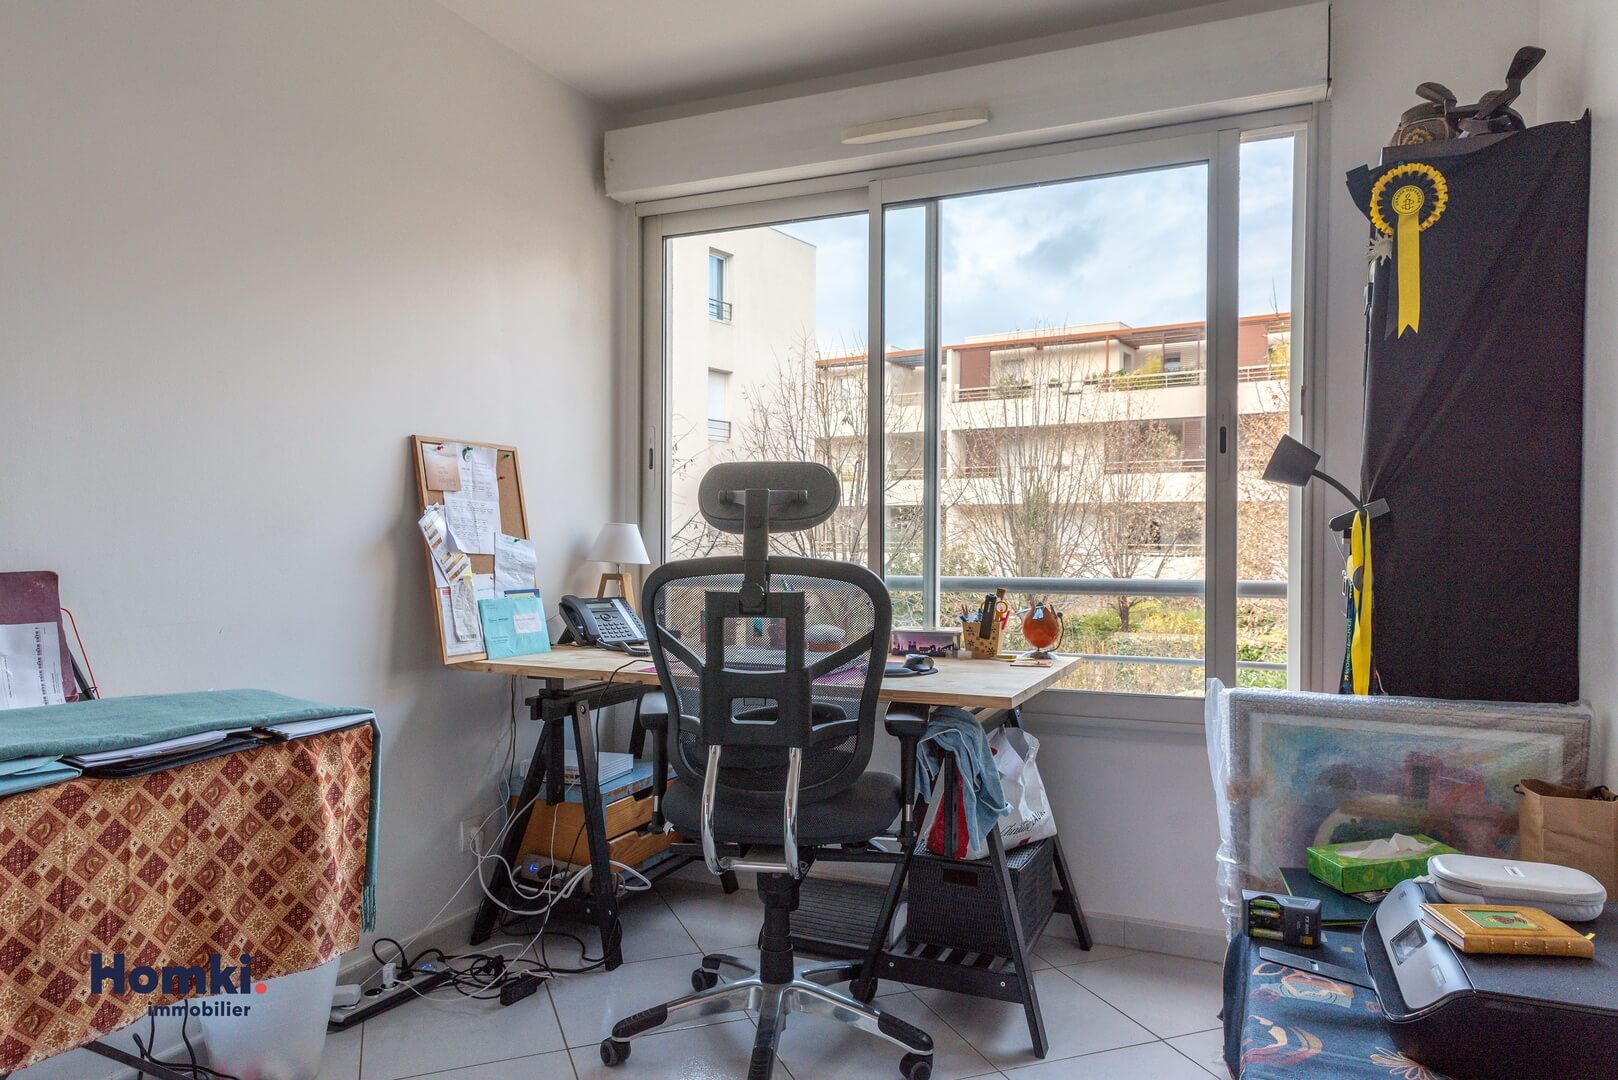 Homki - Vente Appartement  de 68.0 m² à Montpellier 34000